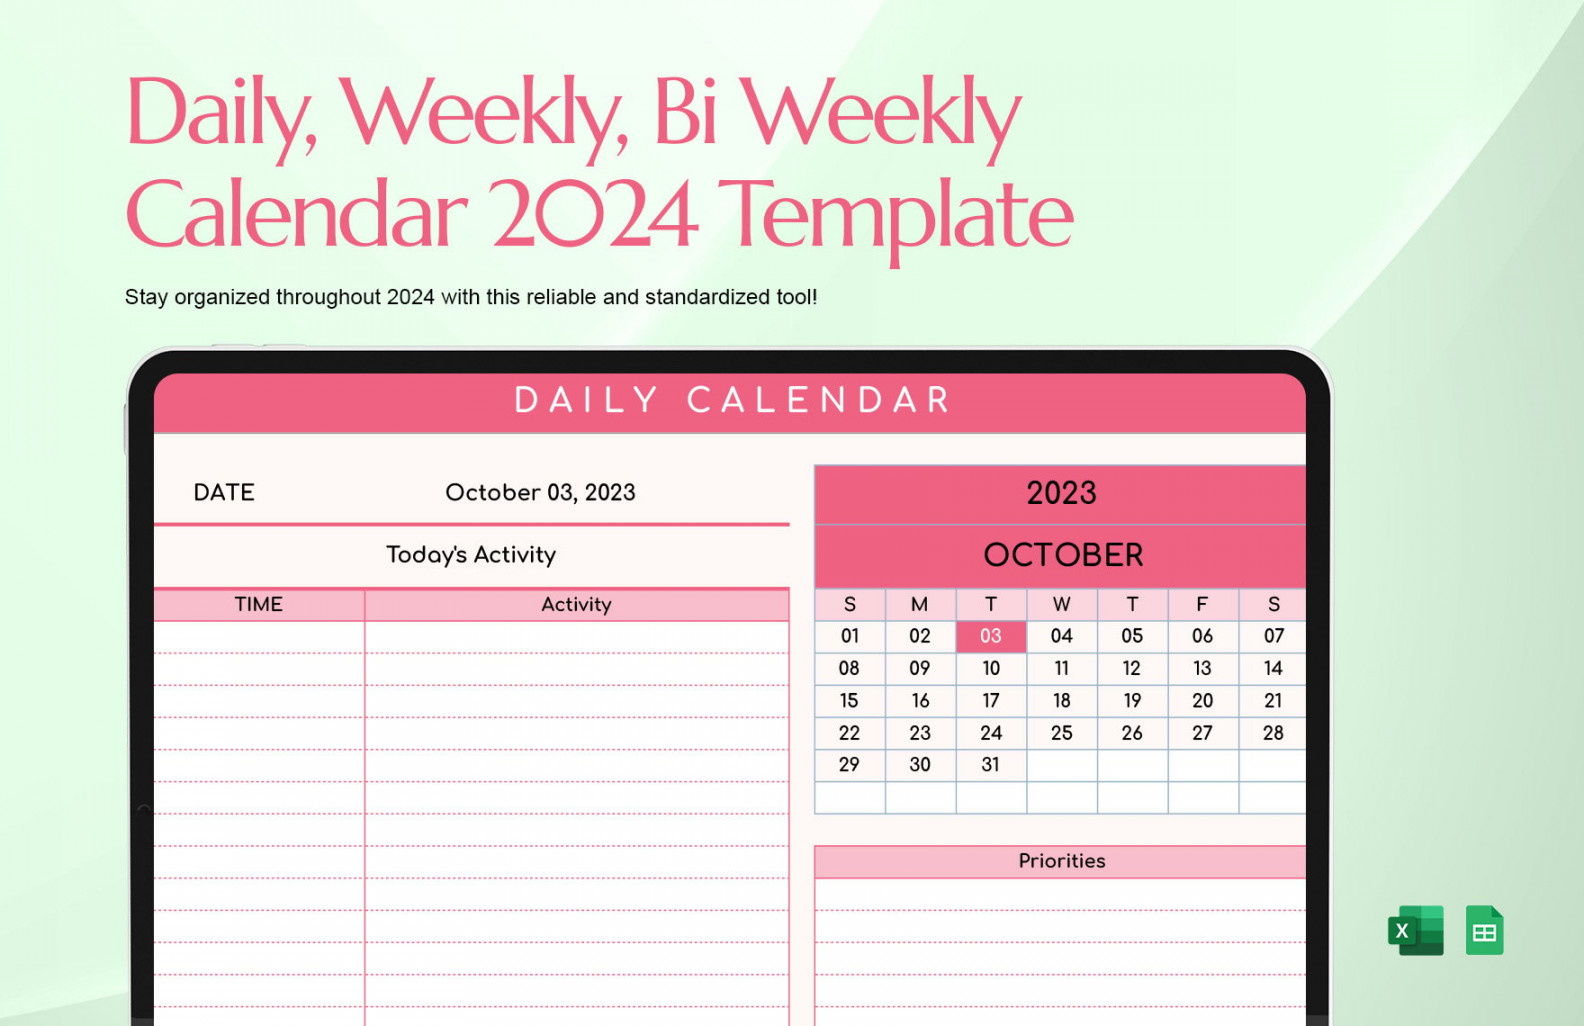 Daily, Weekly, Bi Weekly Calendar  Template in Excel, Google